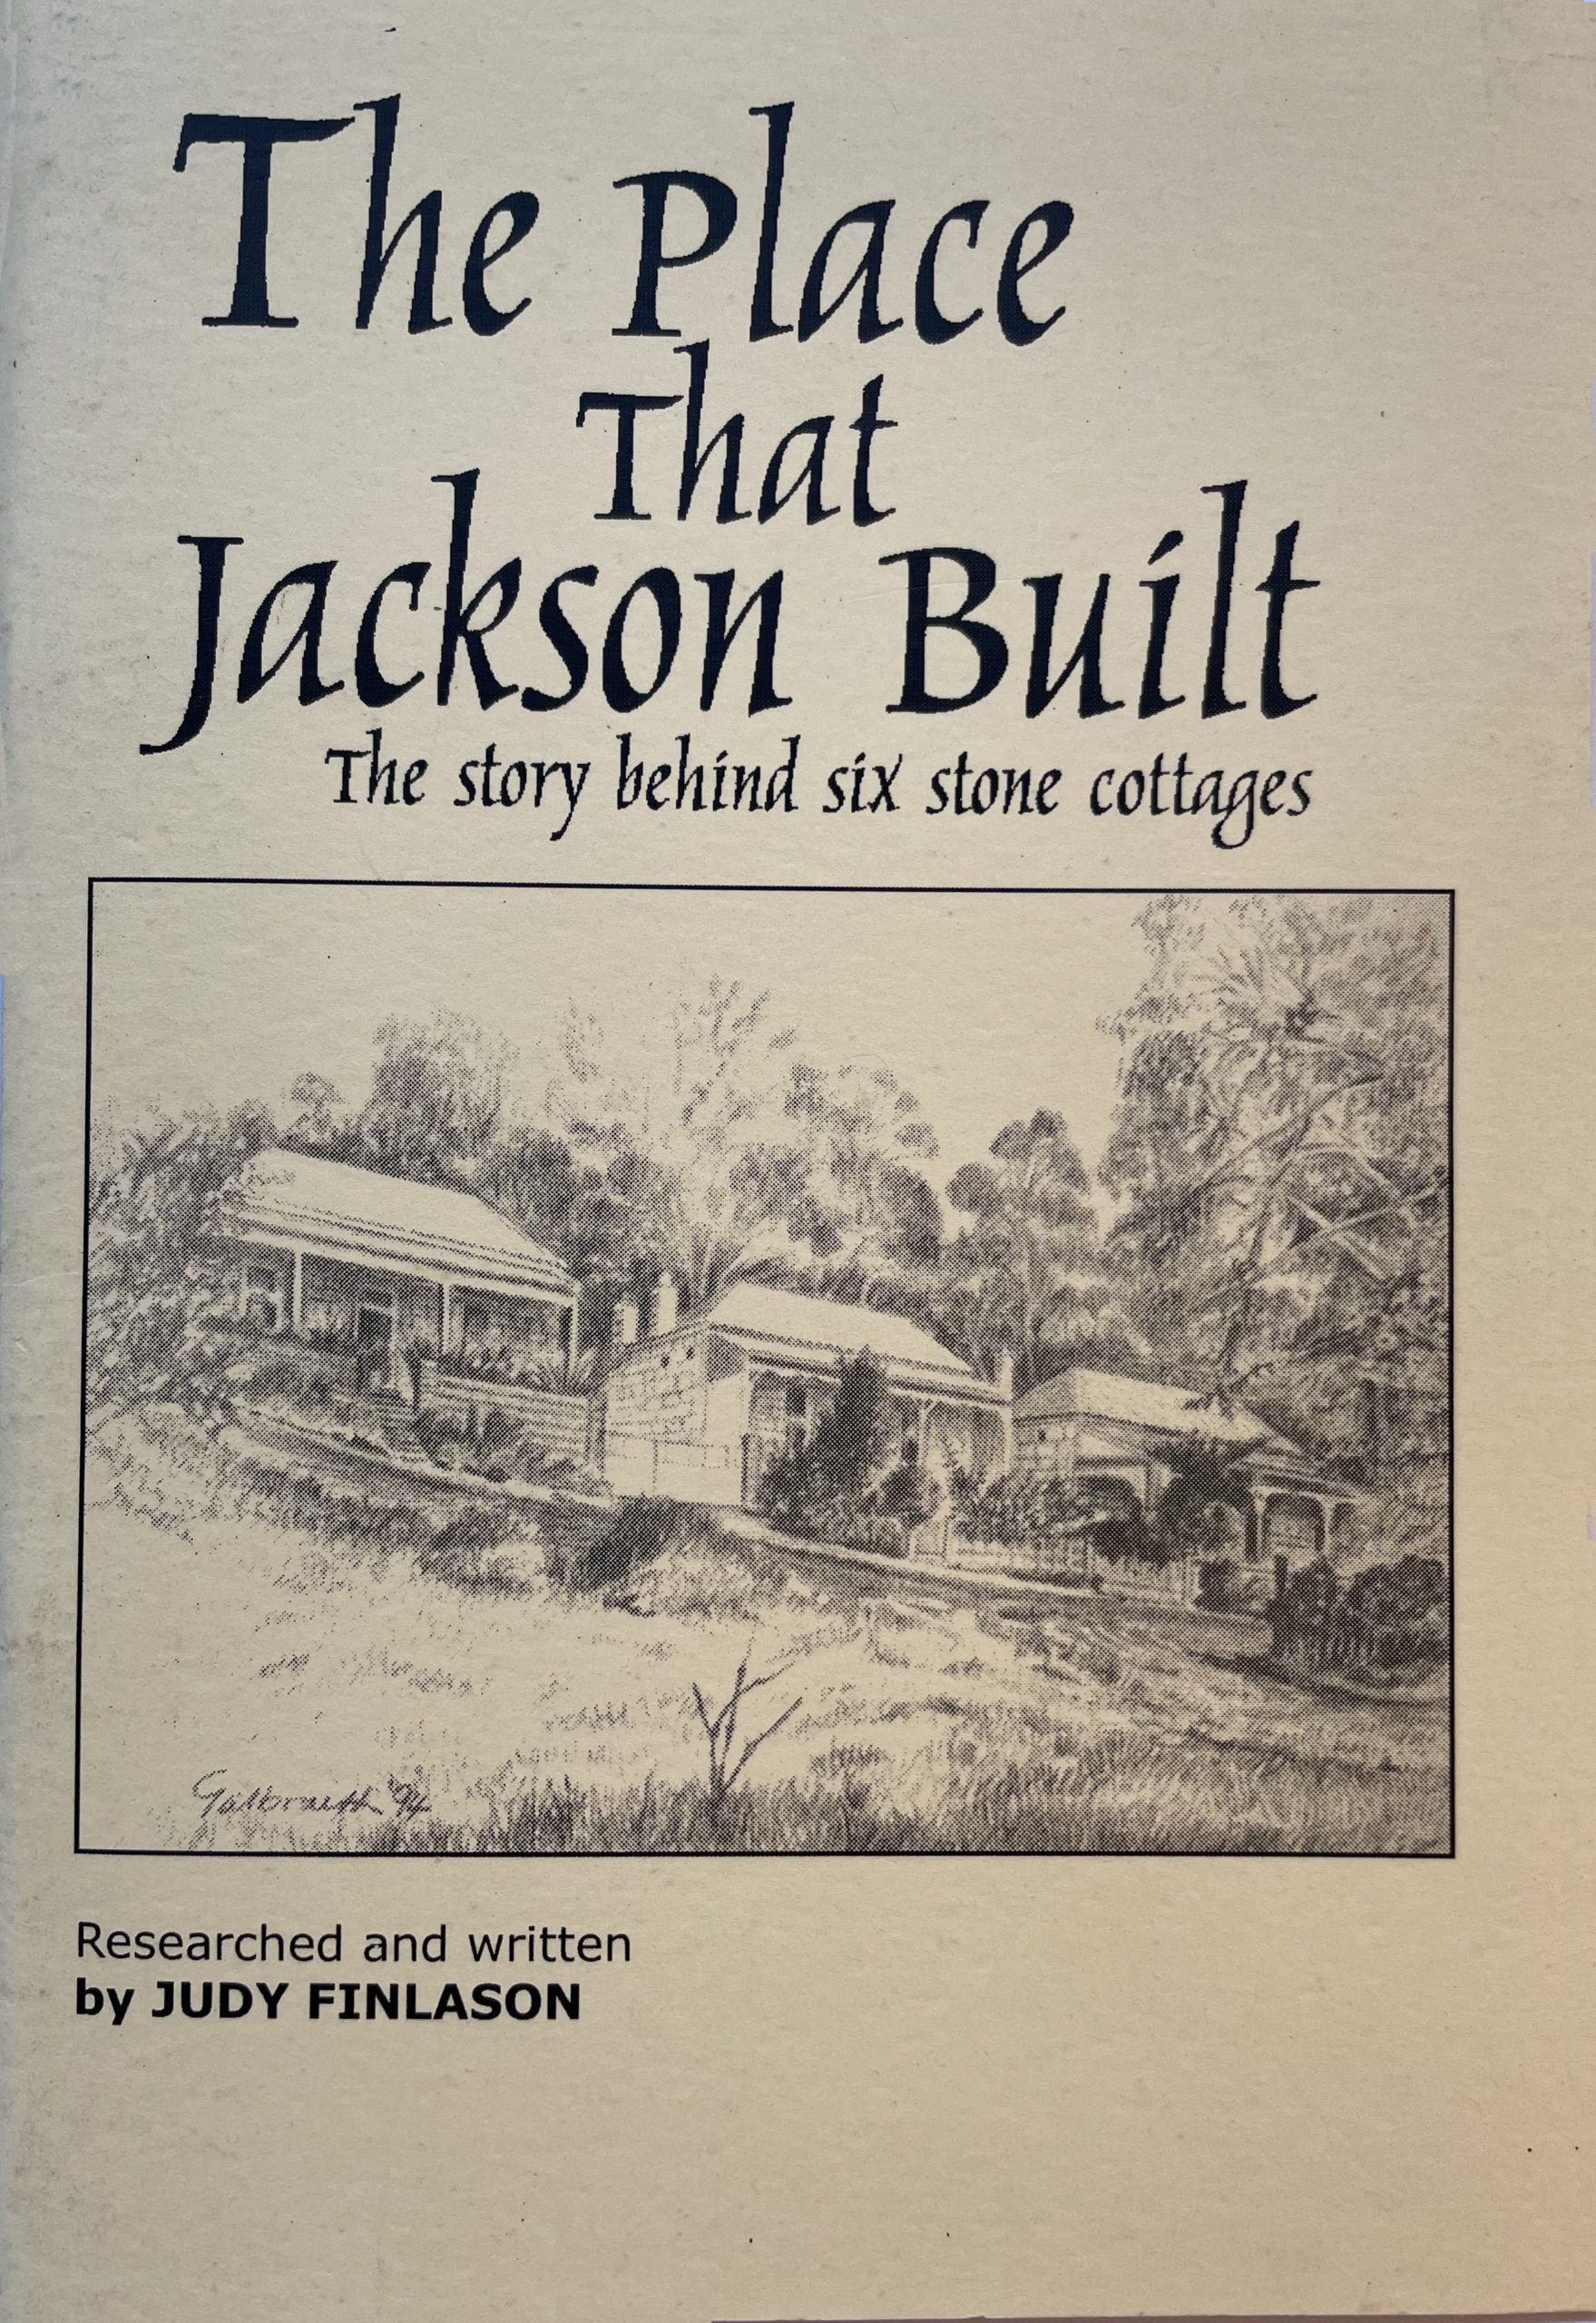 The Place That Jackson Built